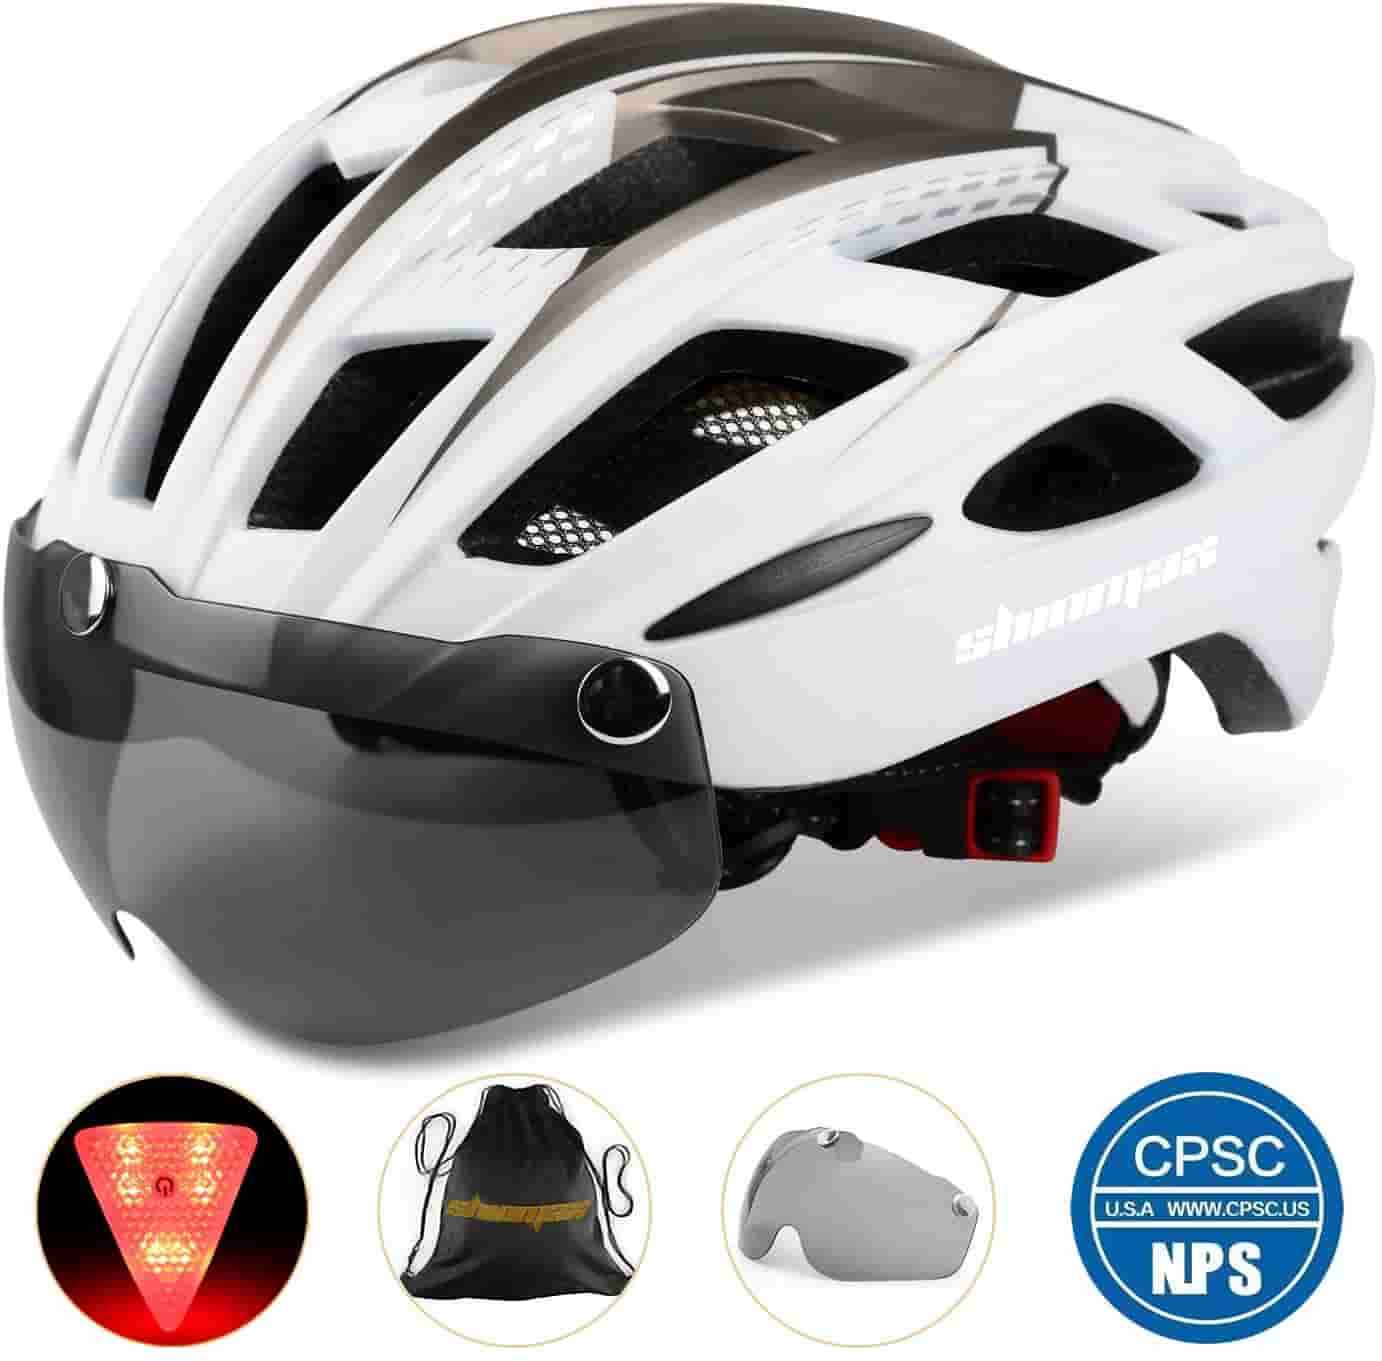 basecamp specialized bike helmet